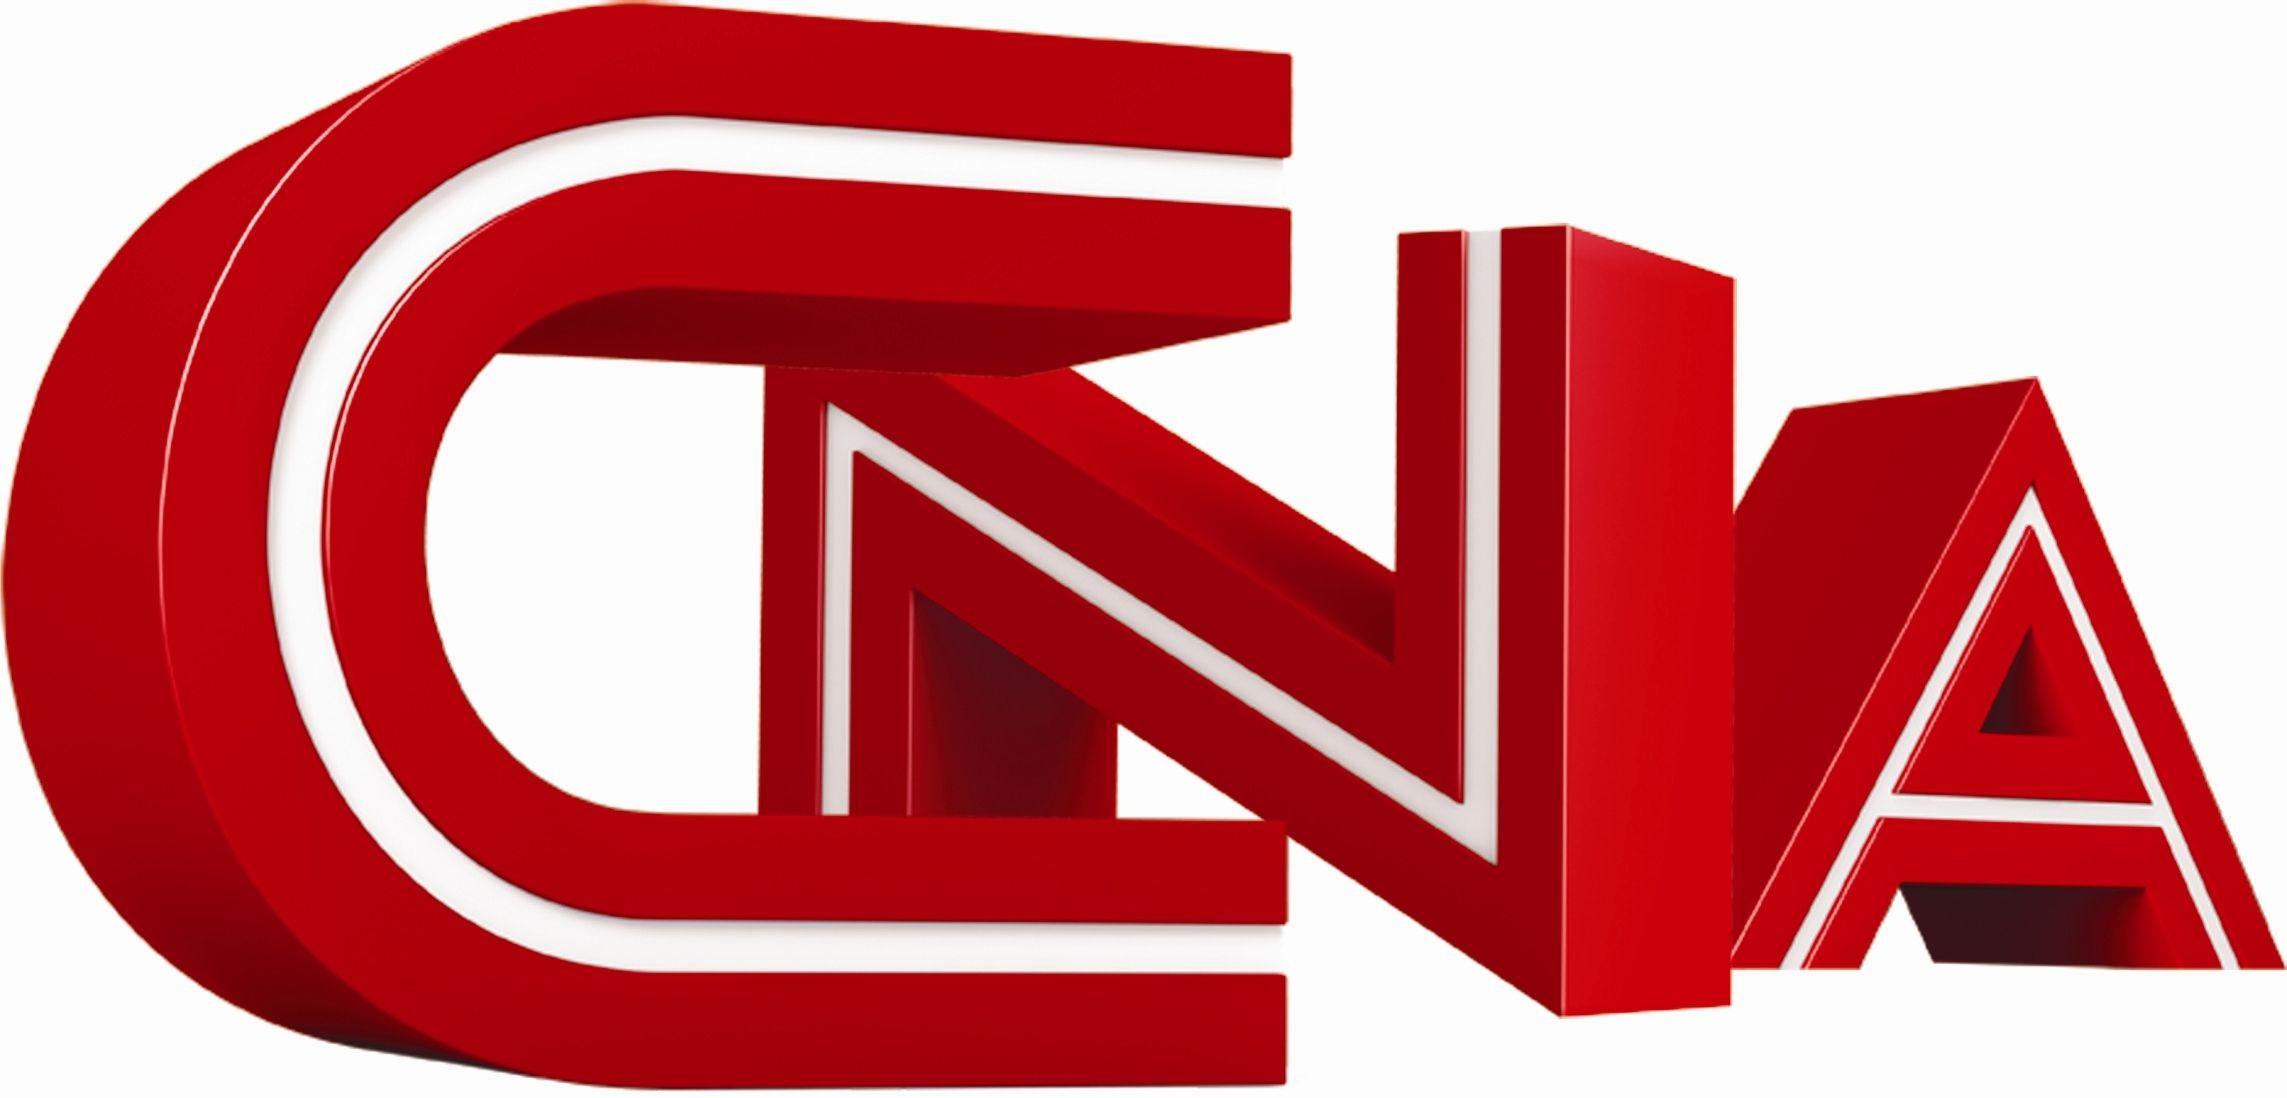 CNA Logo - CNA Logo】. CNA Logo Design Vector PNG Free Download